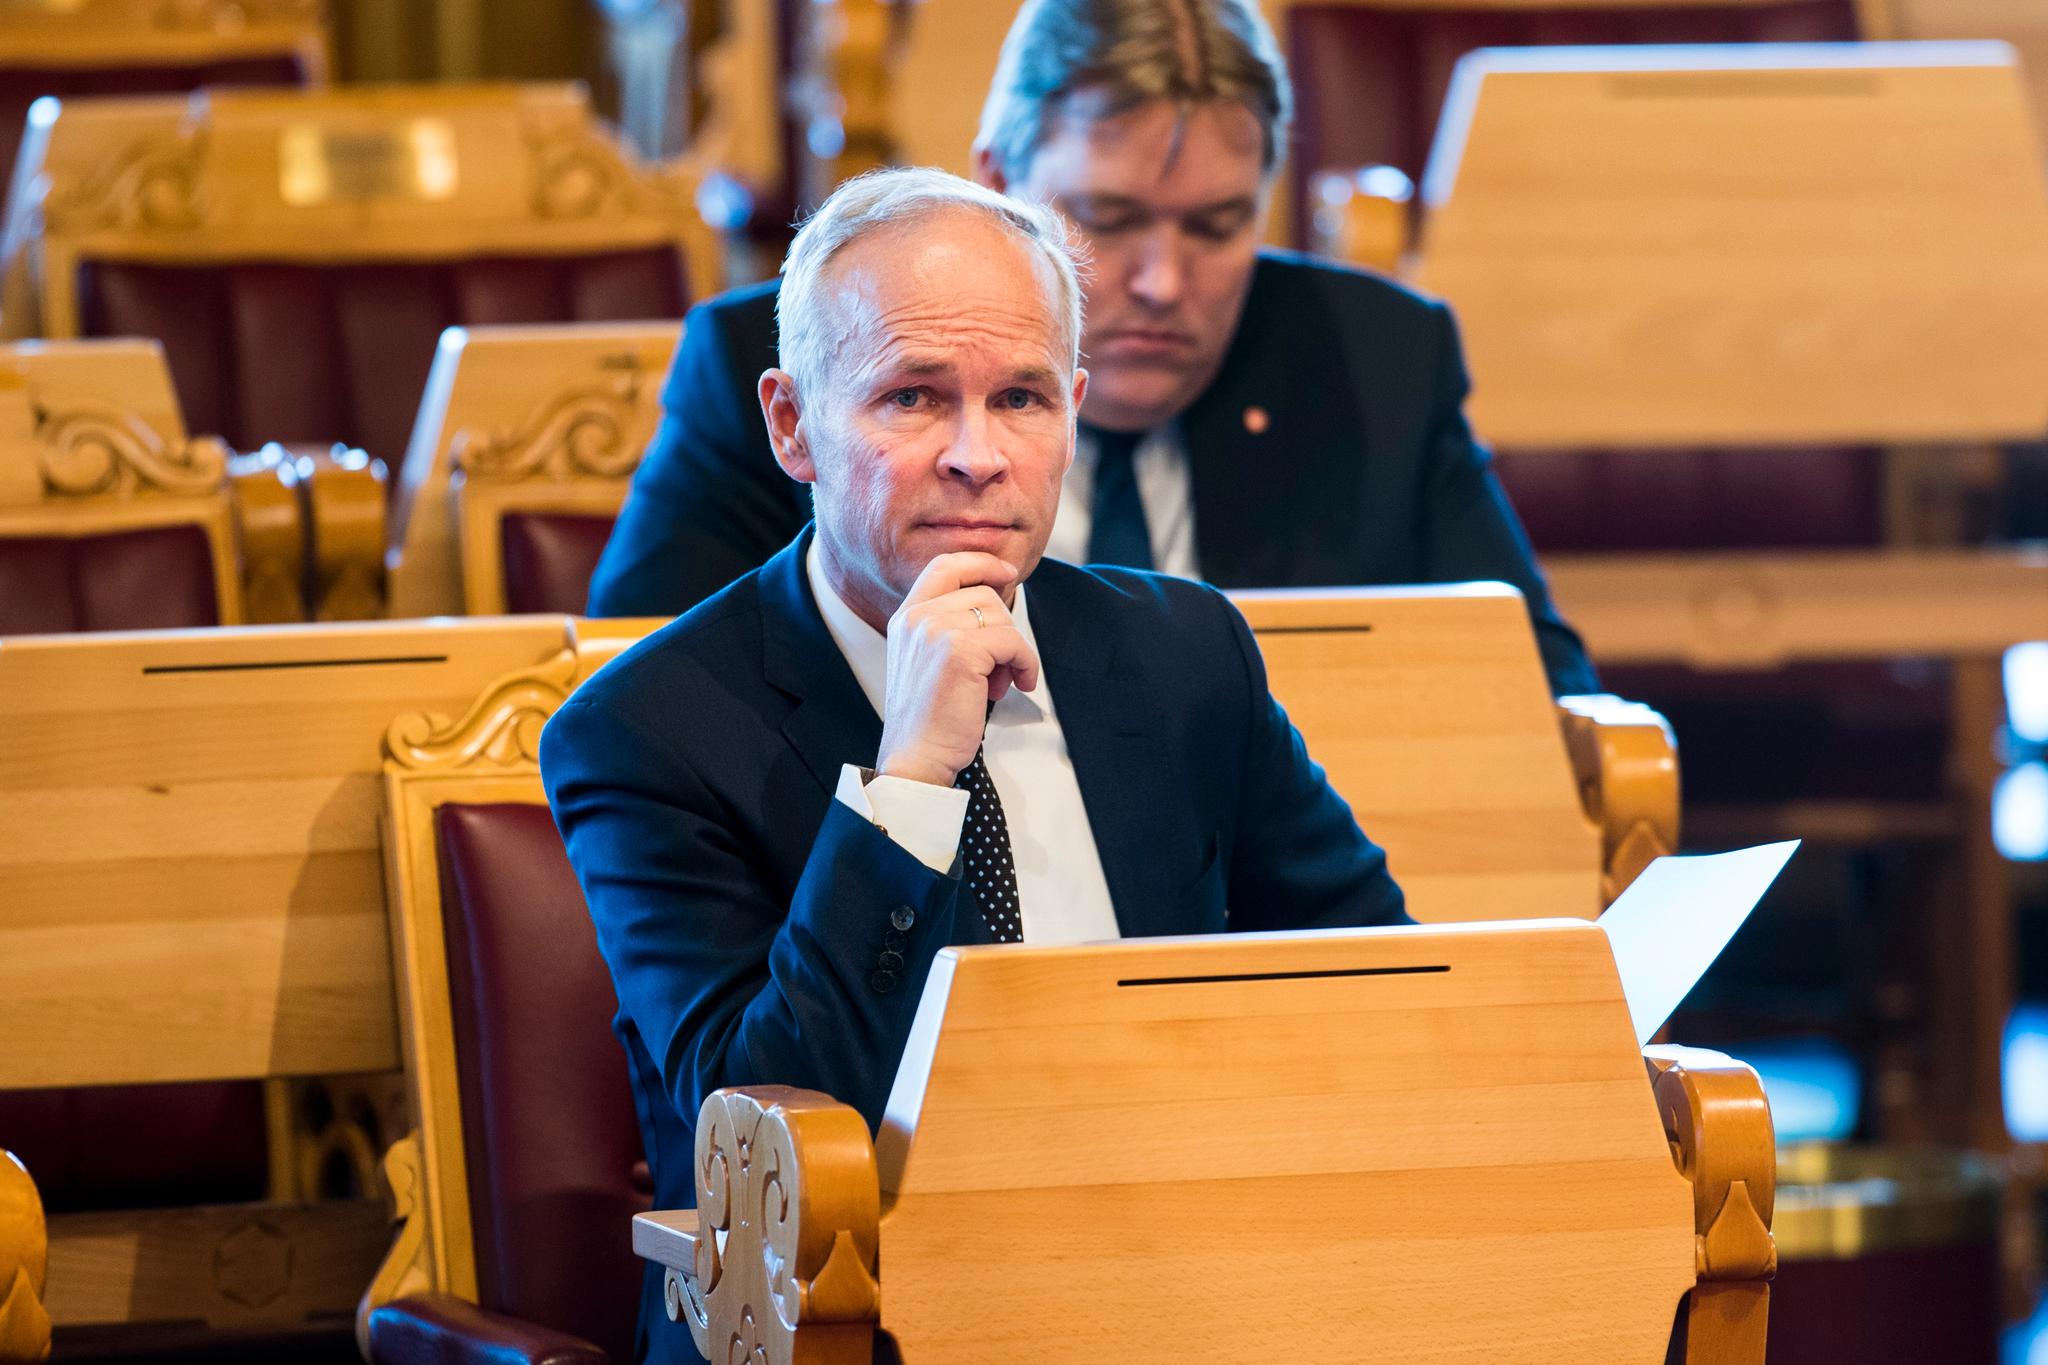 Kunnskaps- og integreringsminister Jan Tore Sanner (H) beklager sin uttalelse om 22. juli i kjølvannet av debatten om Justisdepartementet skal kunne frata norske fremmedkrigere passet uten at det avgjøres i en domstol.